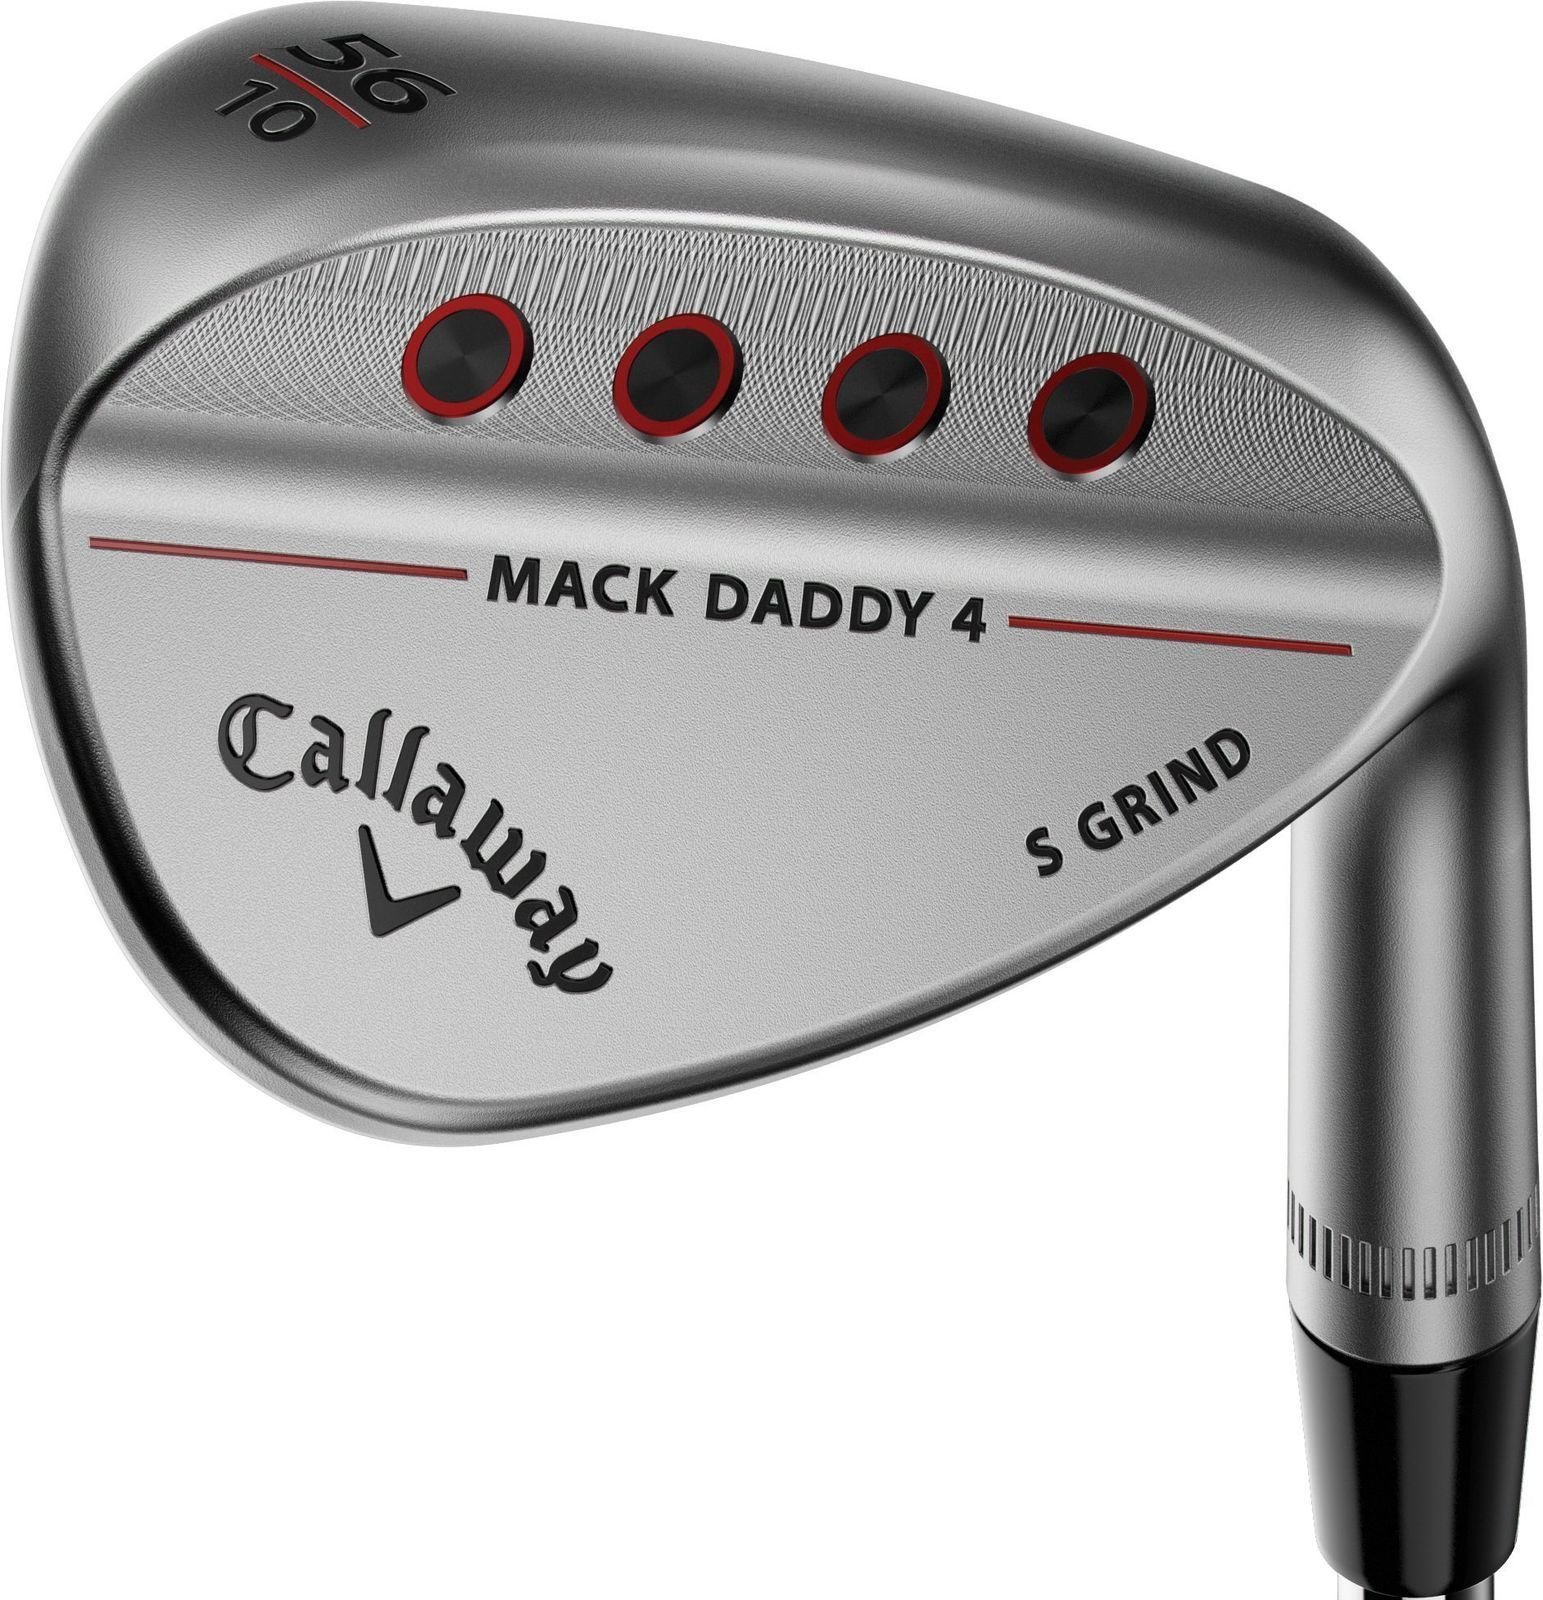 Λέσχες γκολφ - wedge Callaway Mack Daddy 4 Chrome Wedge 56-08 C-Grind Right Hand